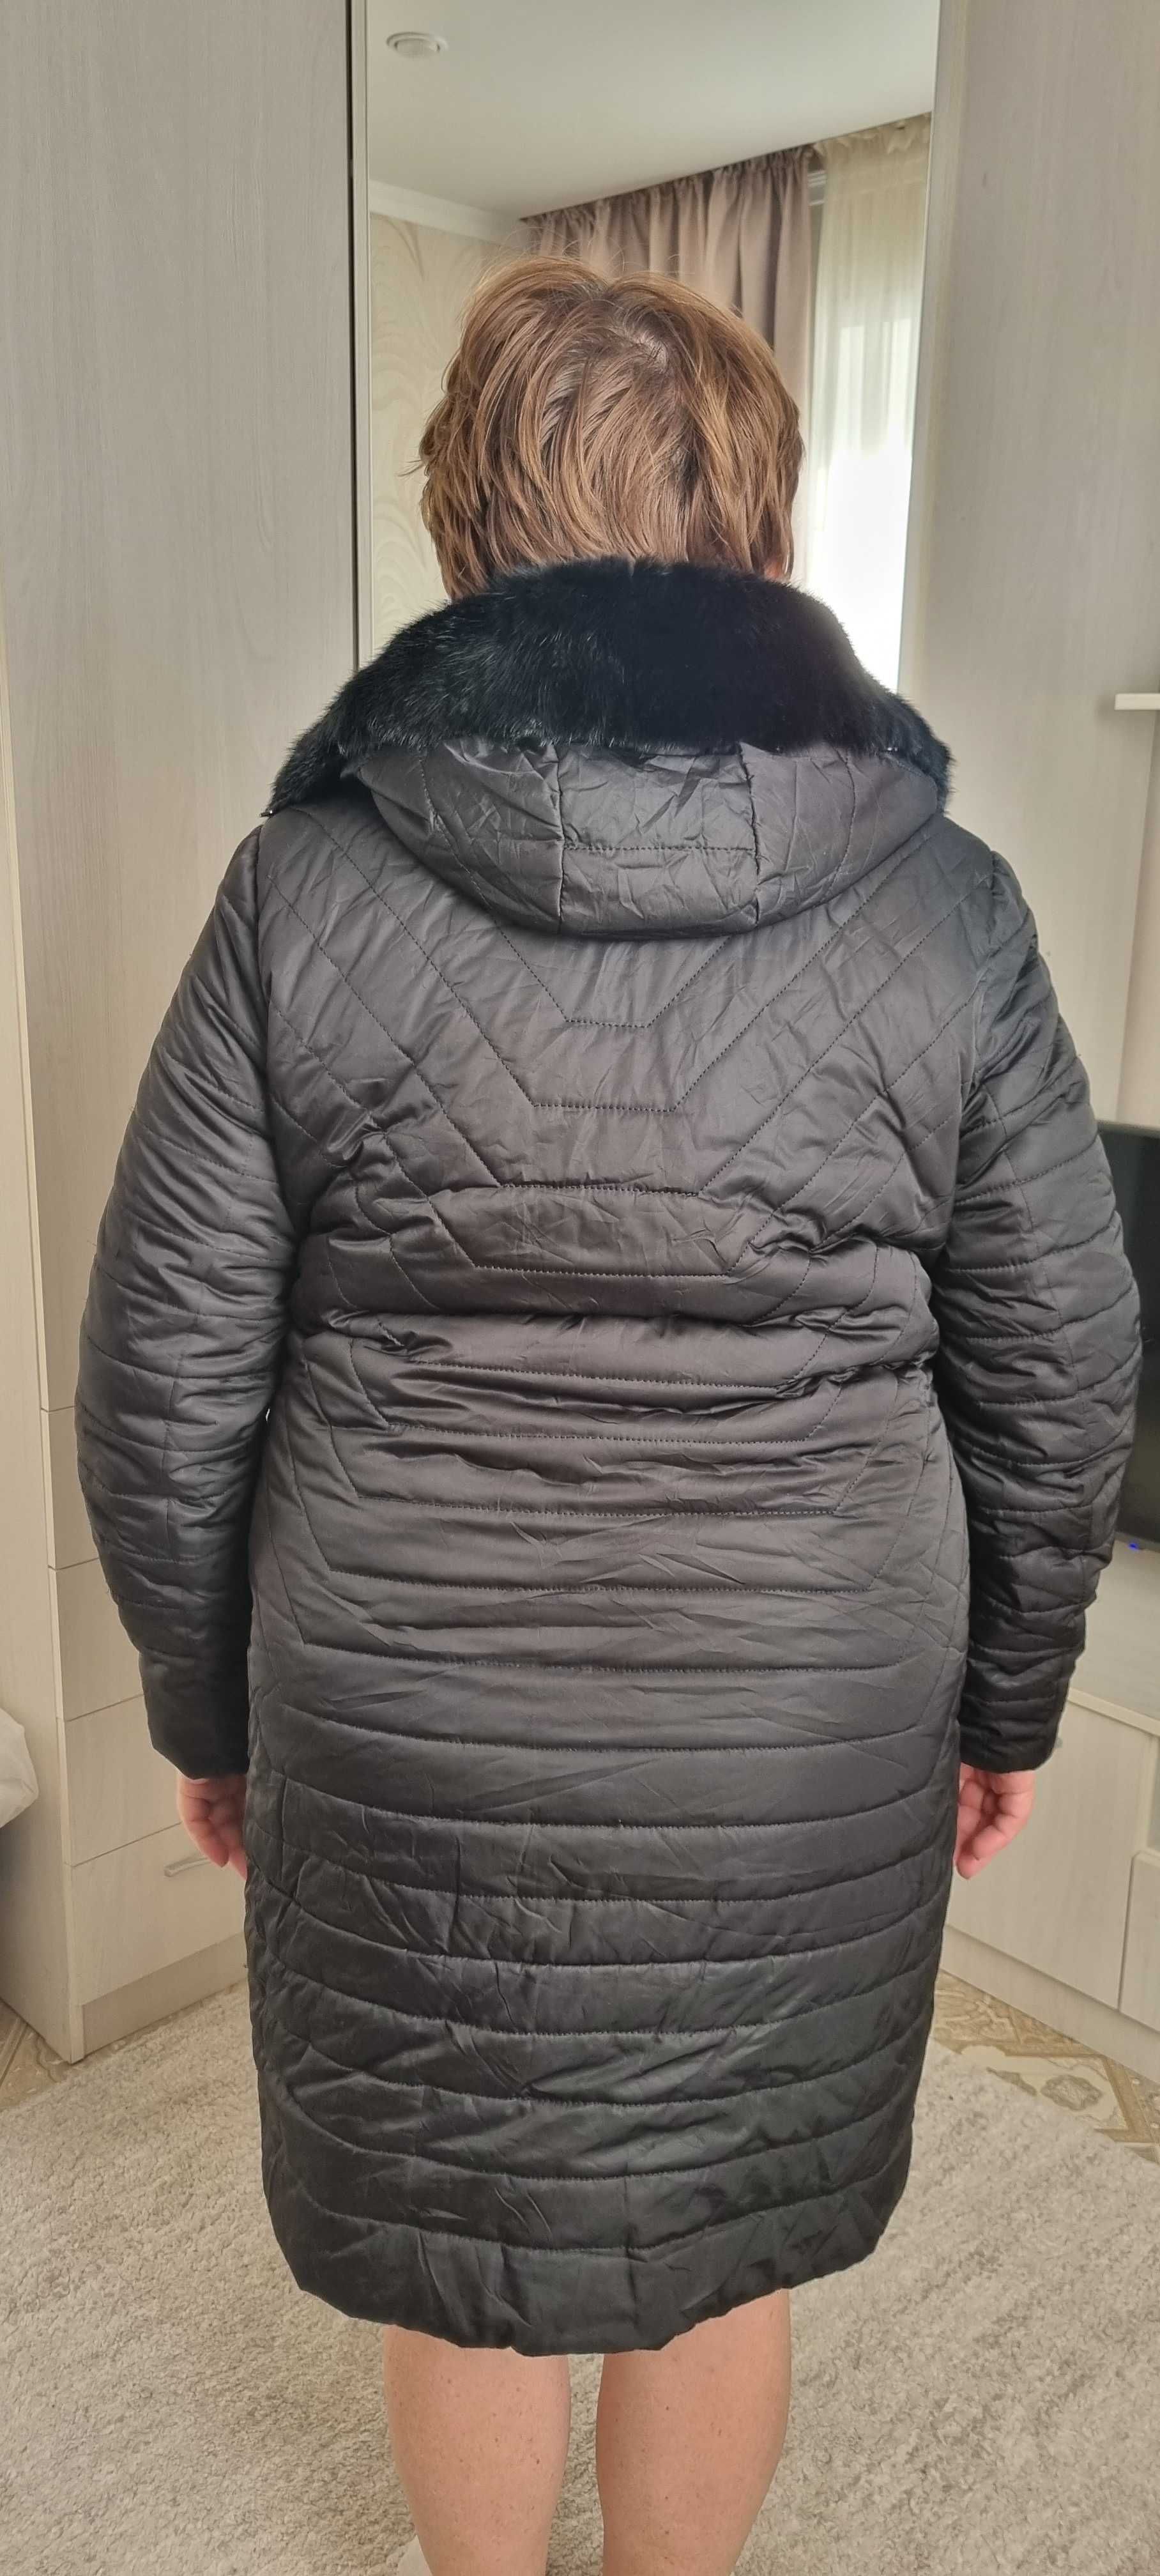 Зимняя куртка, пуховик, норковый капюшон, размер 52-54